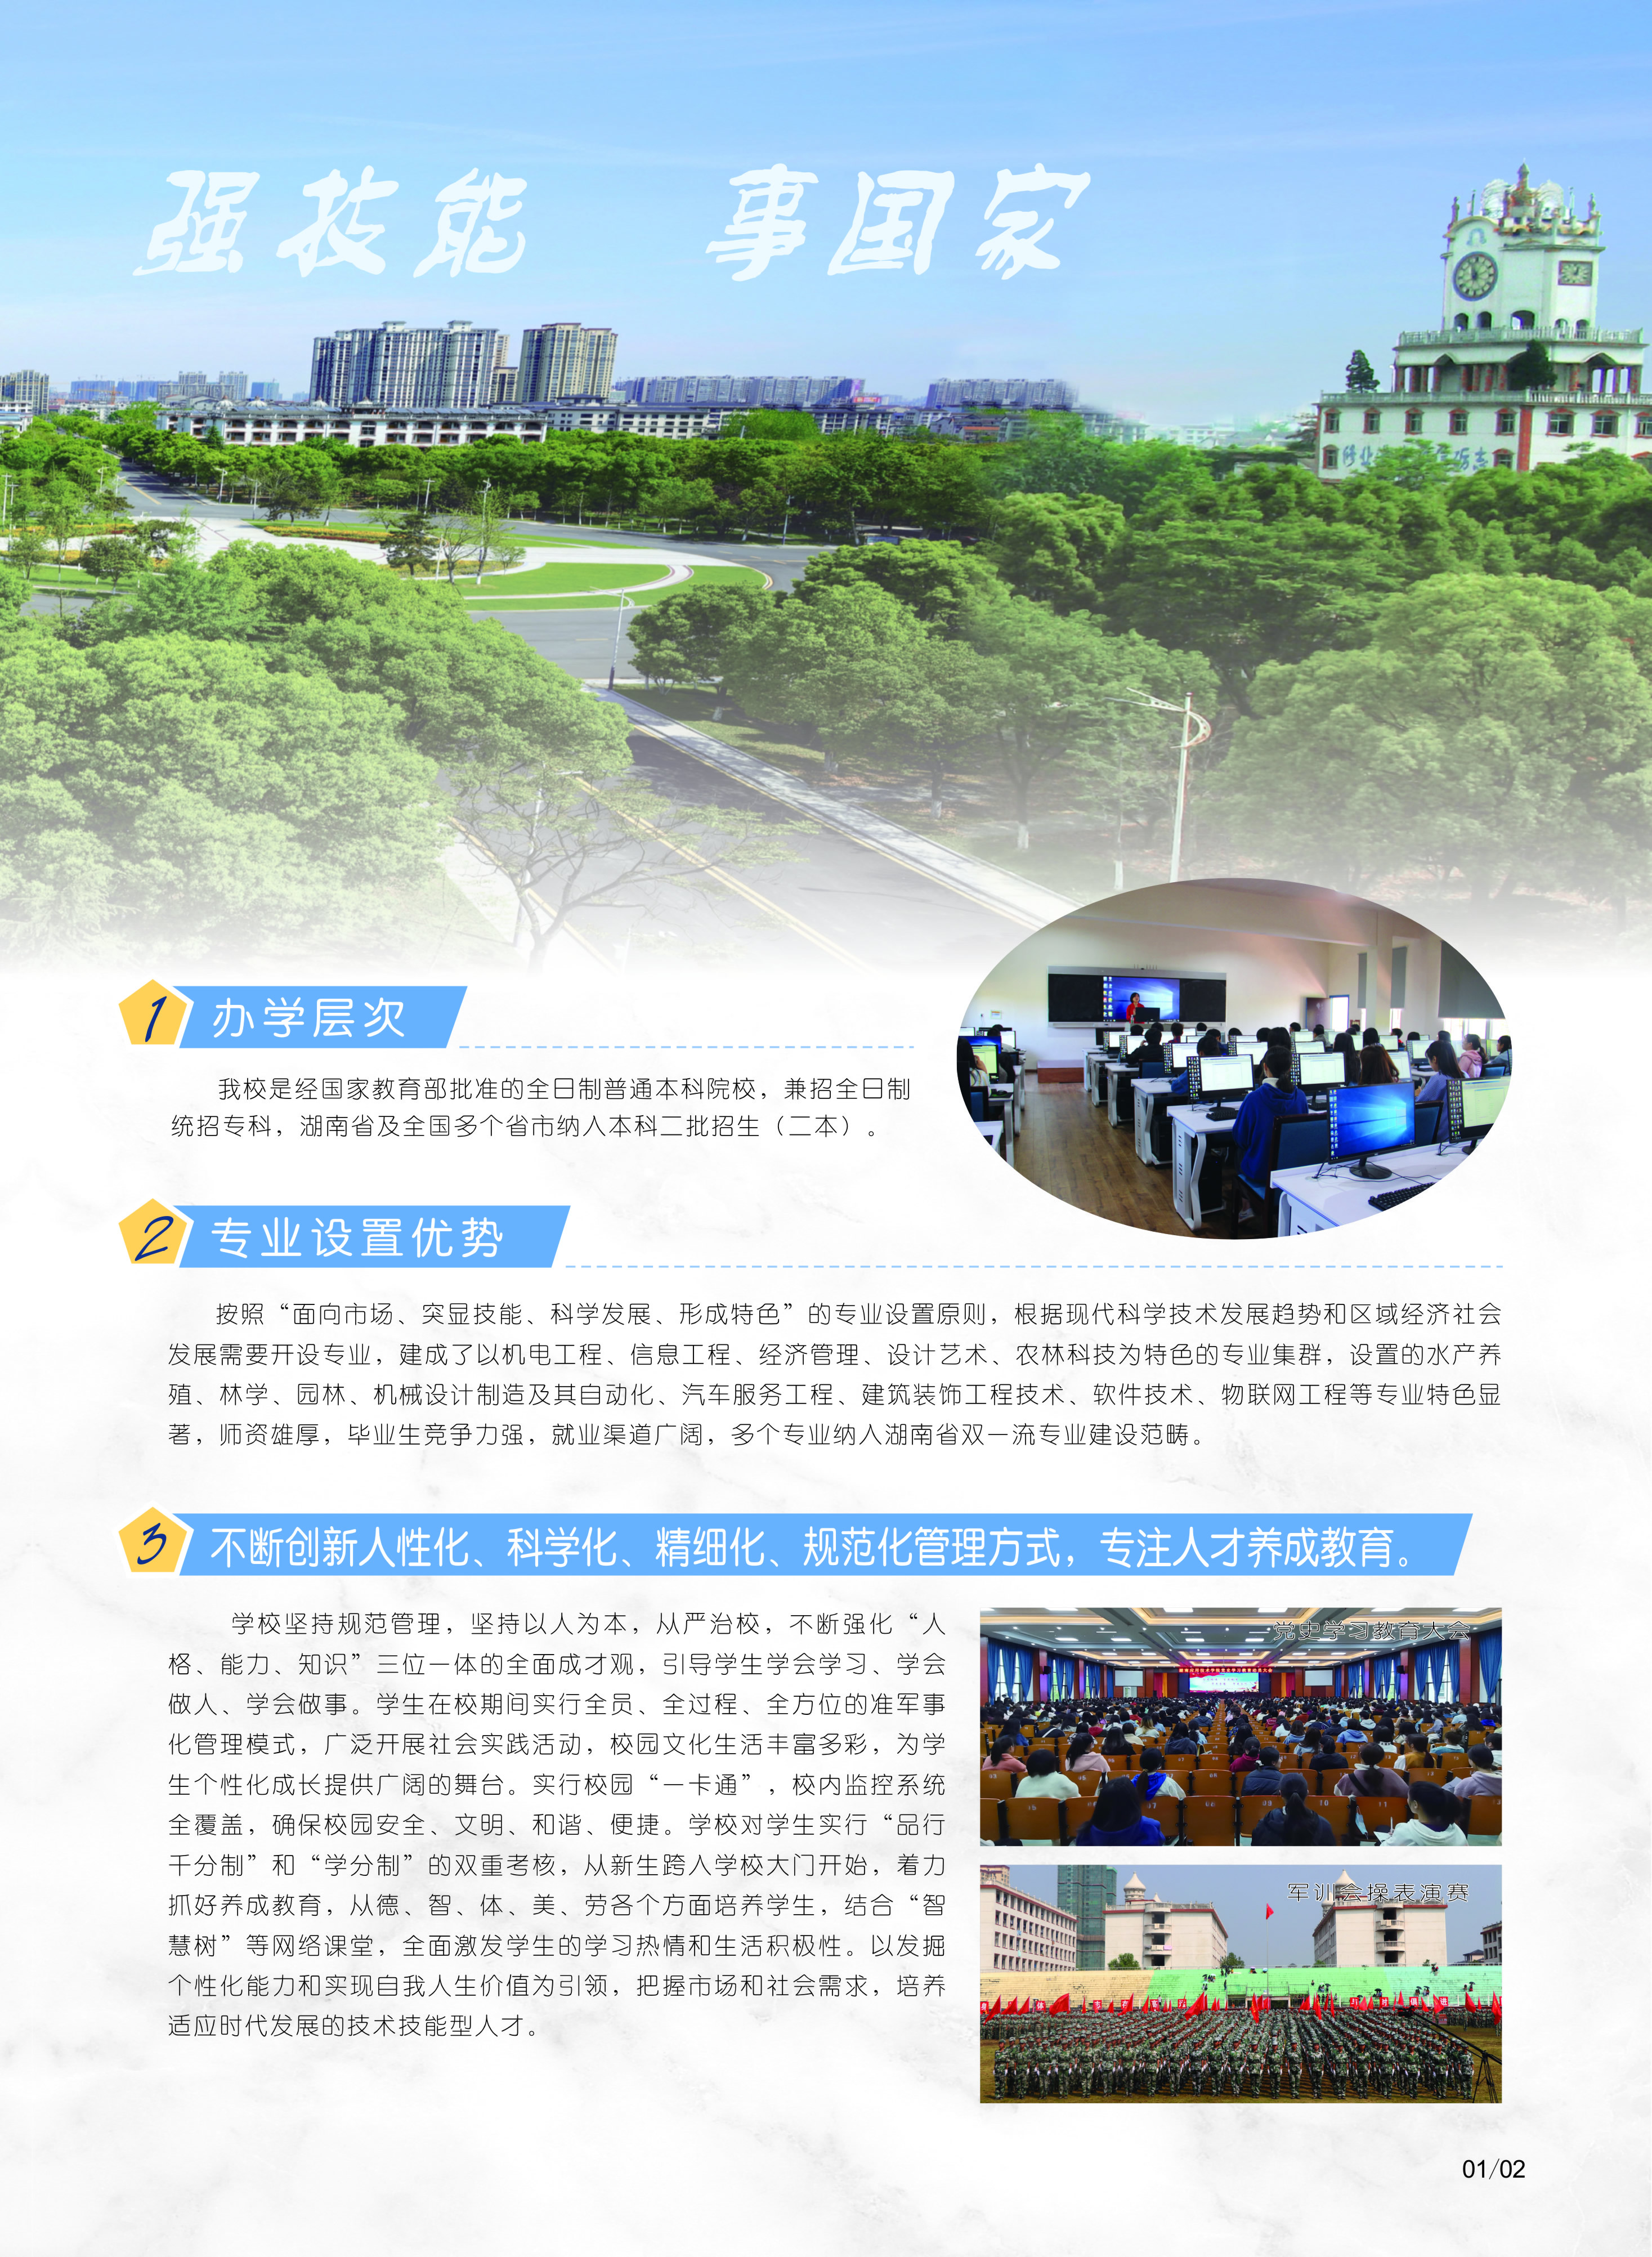 湖南应用技术学院2021年招生简章